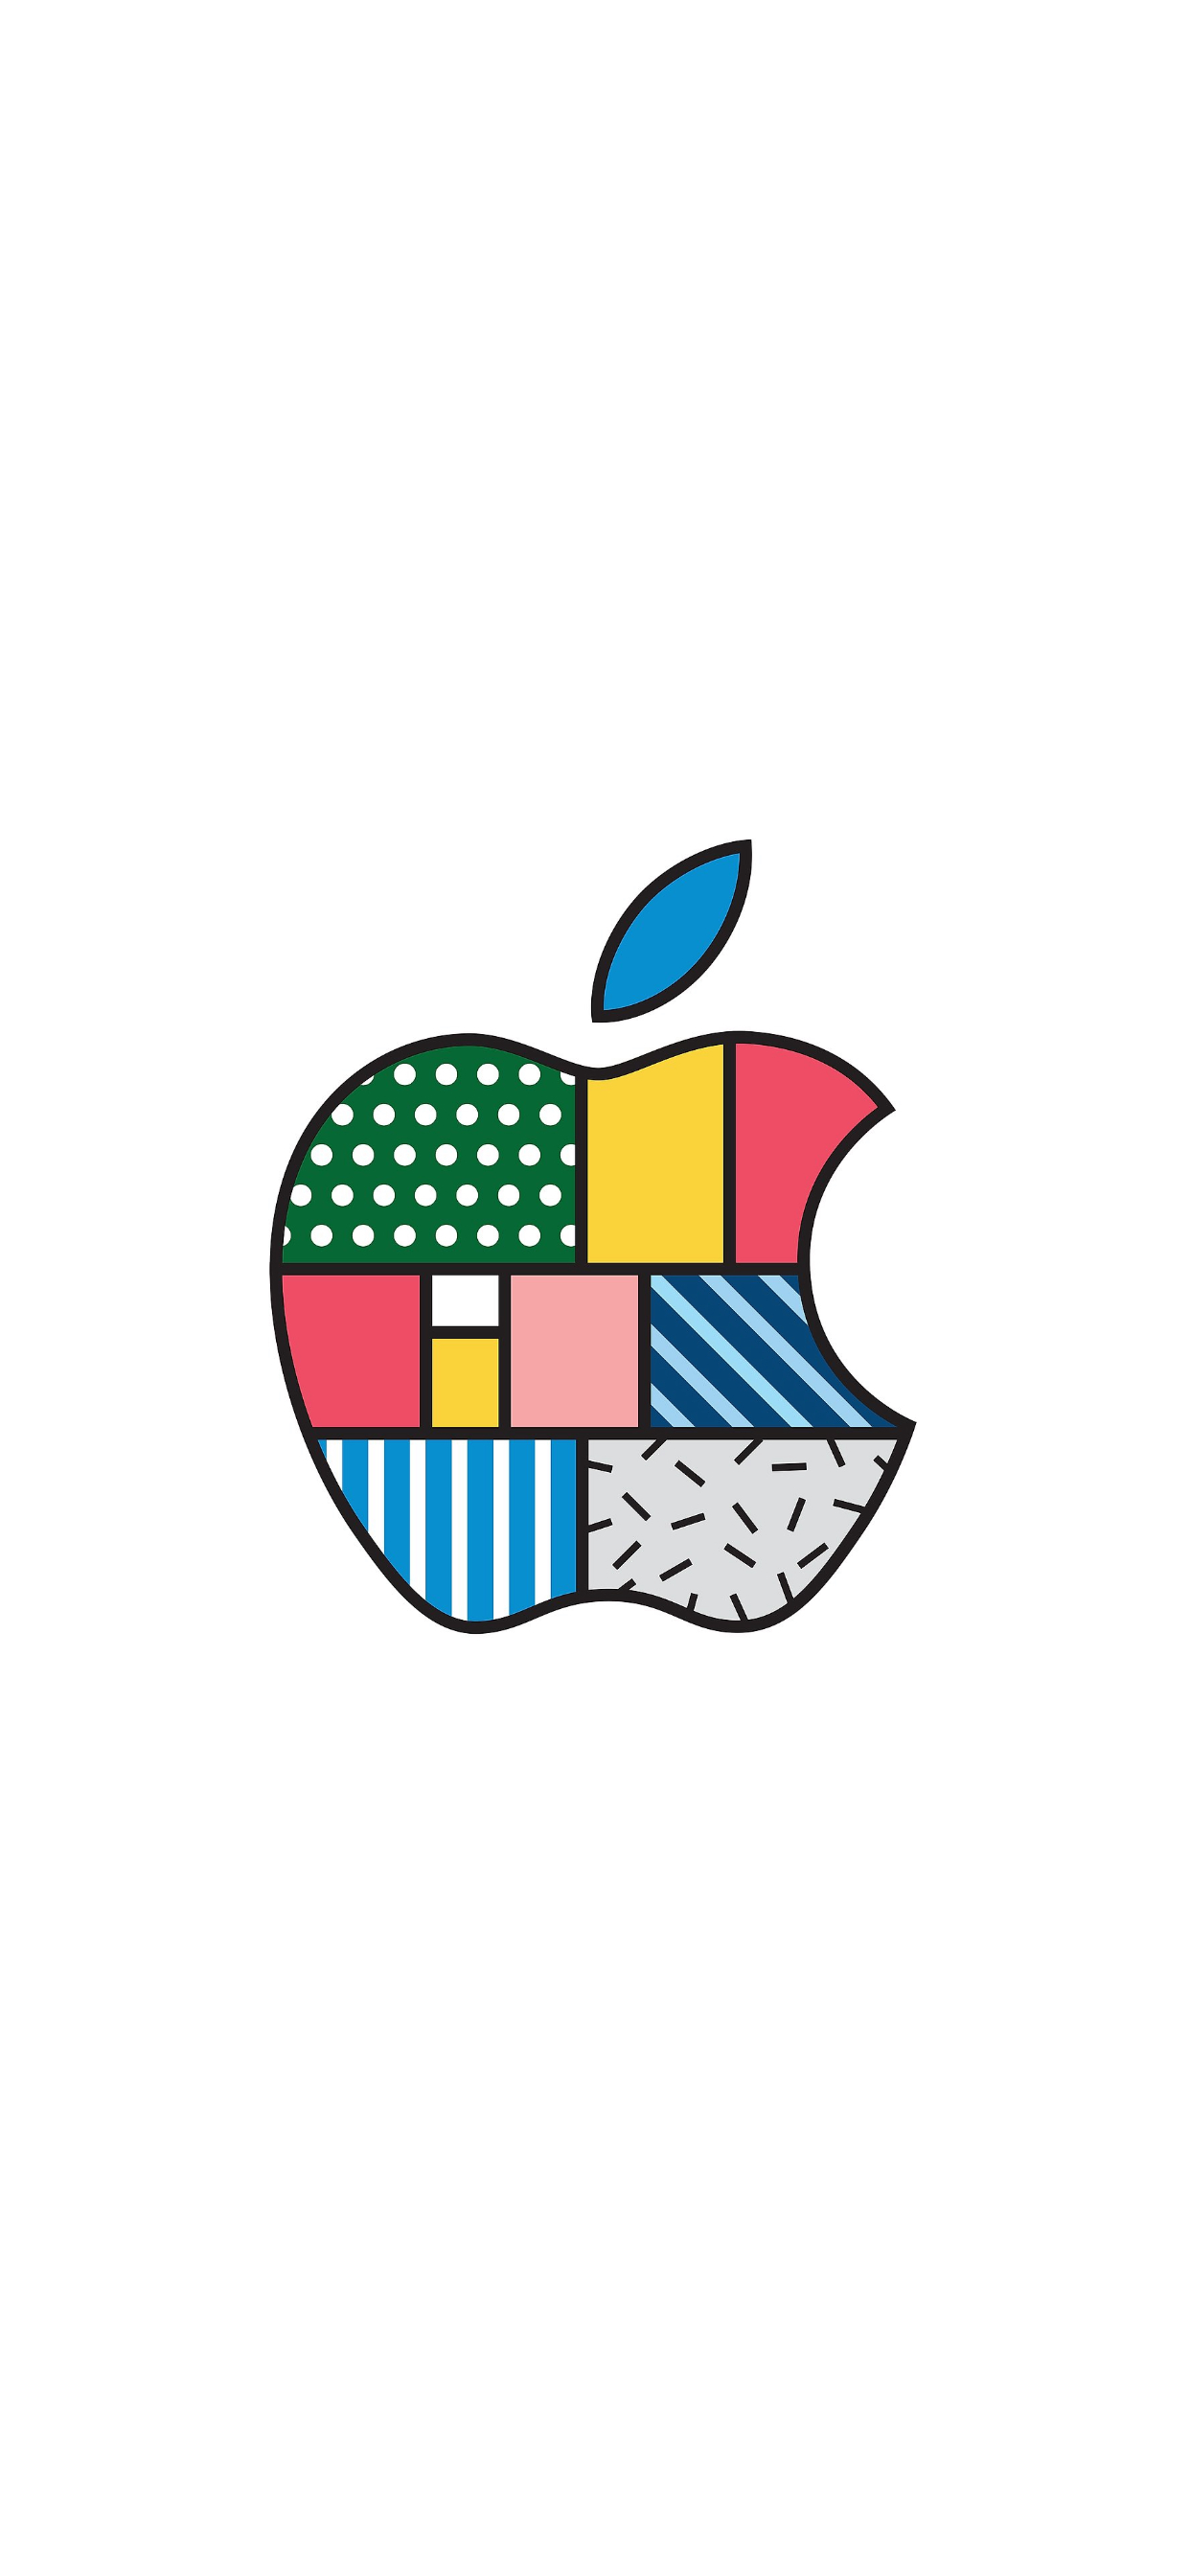 苹果手机壁纸高清logo图片